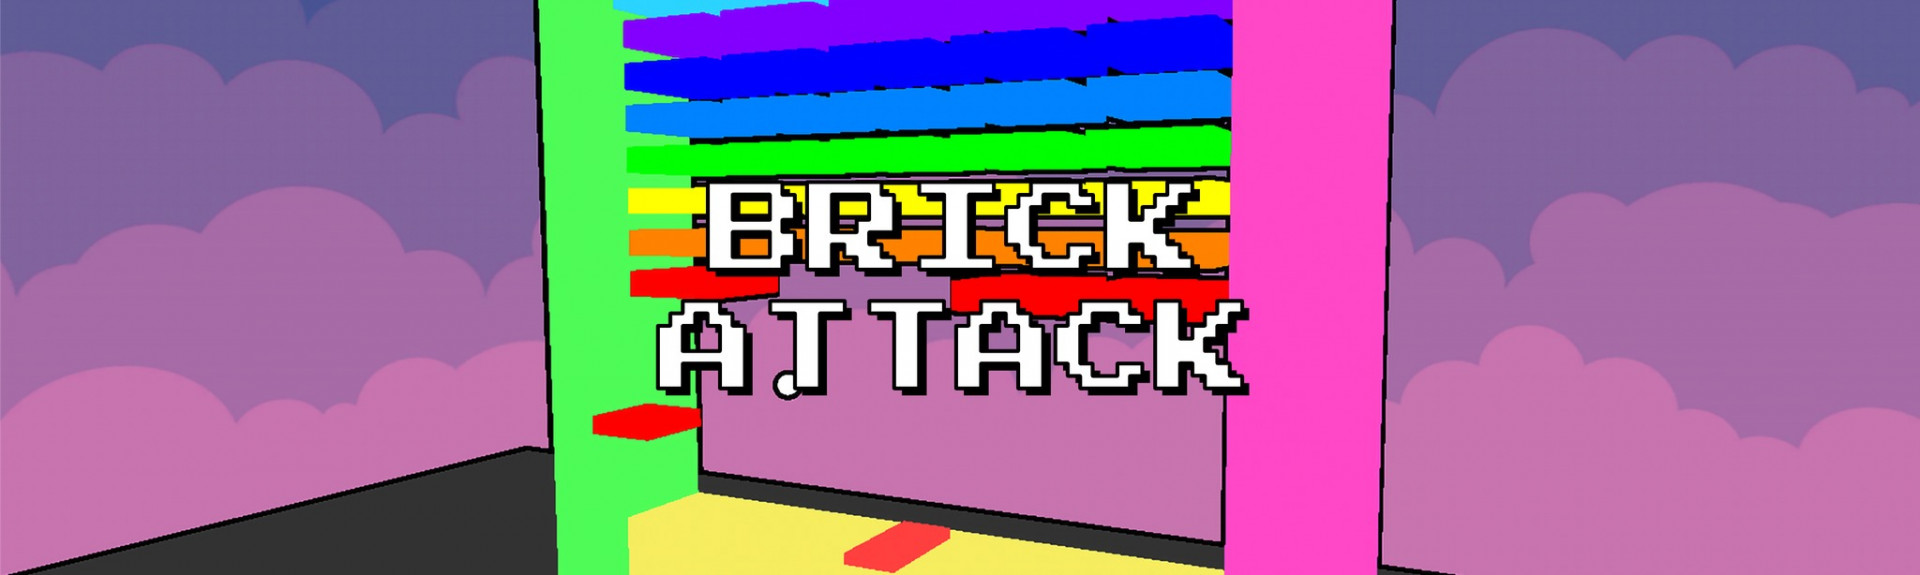 Brick Attack